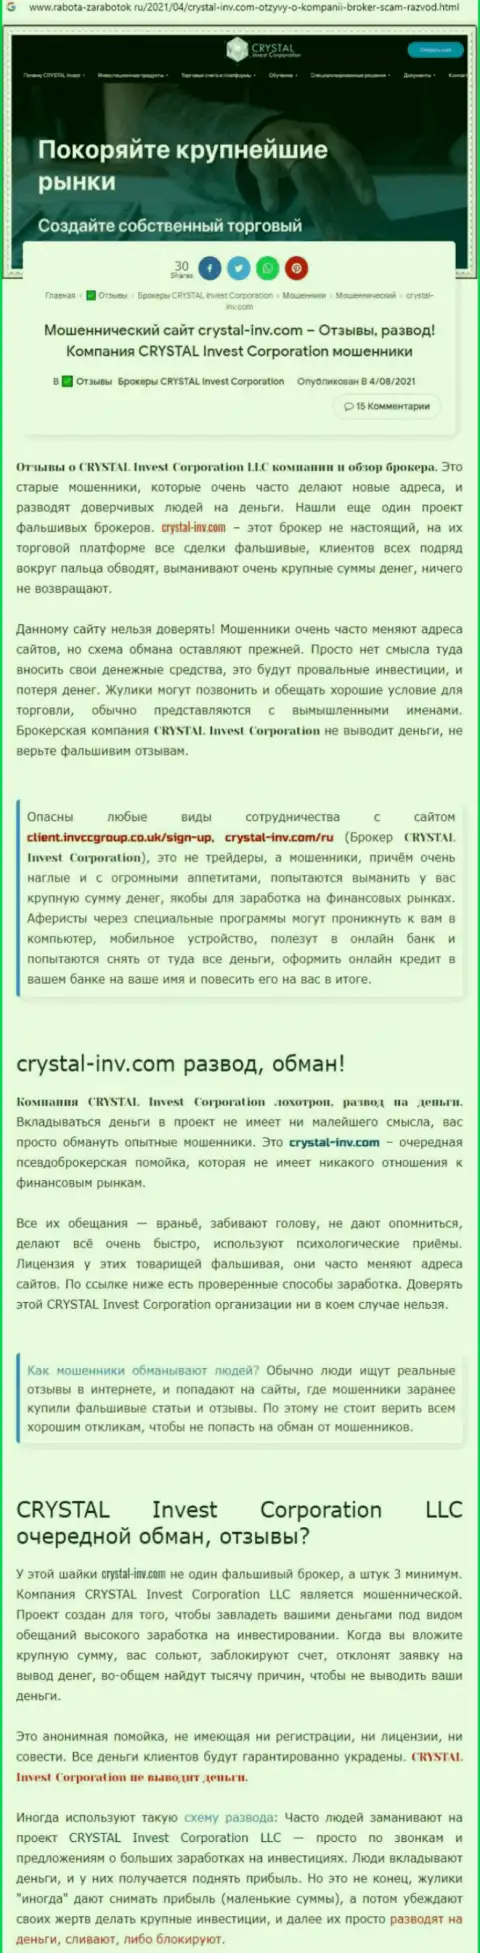 Материал, разоблачающий компанию Crystal Invest, позаимствованный с информационного ресурса с обзорами разных организаций